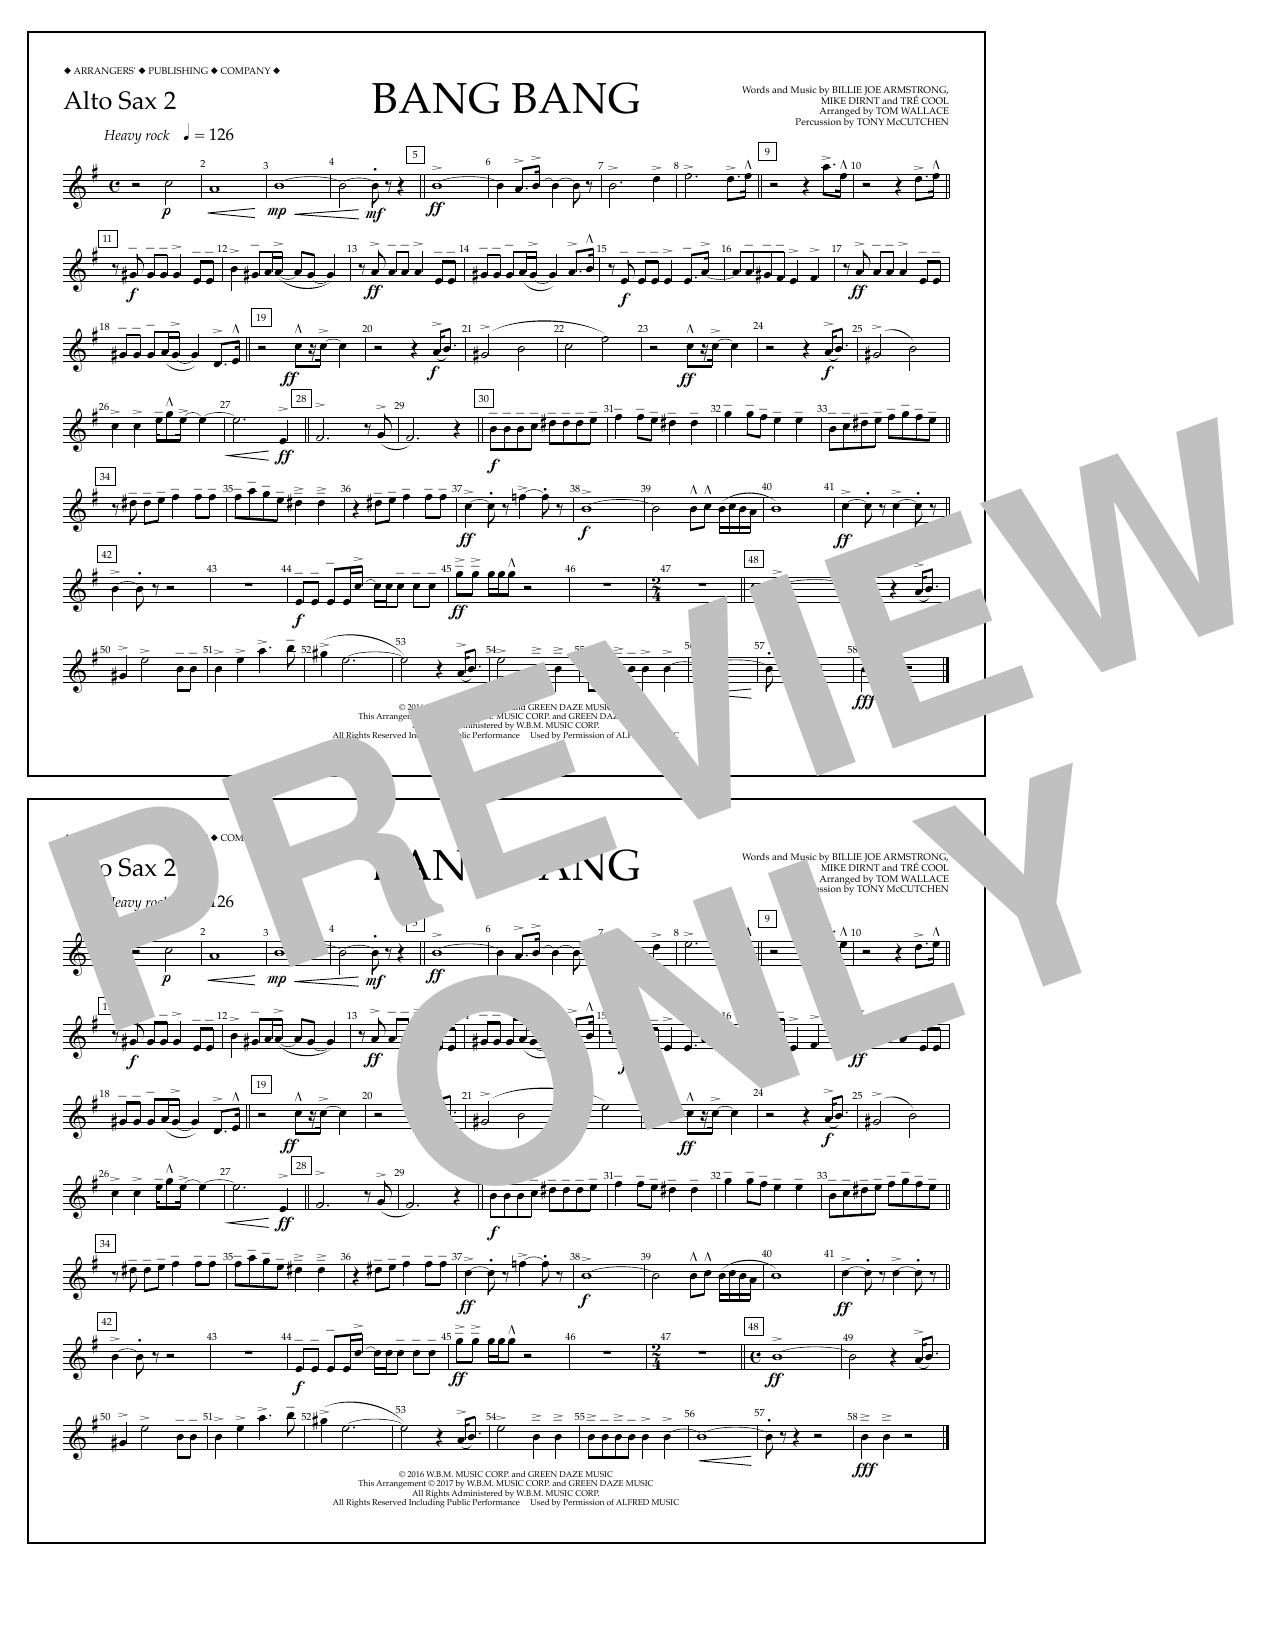 Tom Wallace Bang Bang - Alto Sax 2 Sheet Music Notes & Chords for Marching Band - Download or Print PDF